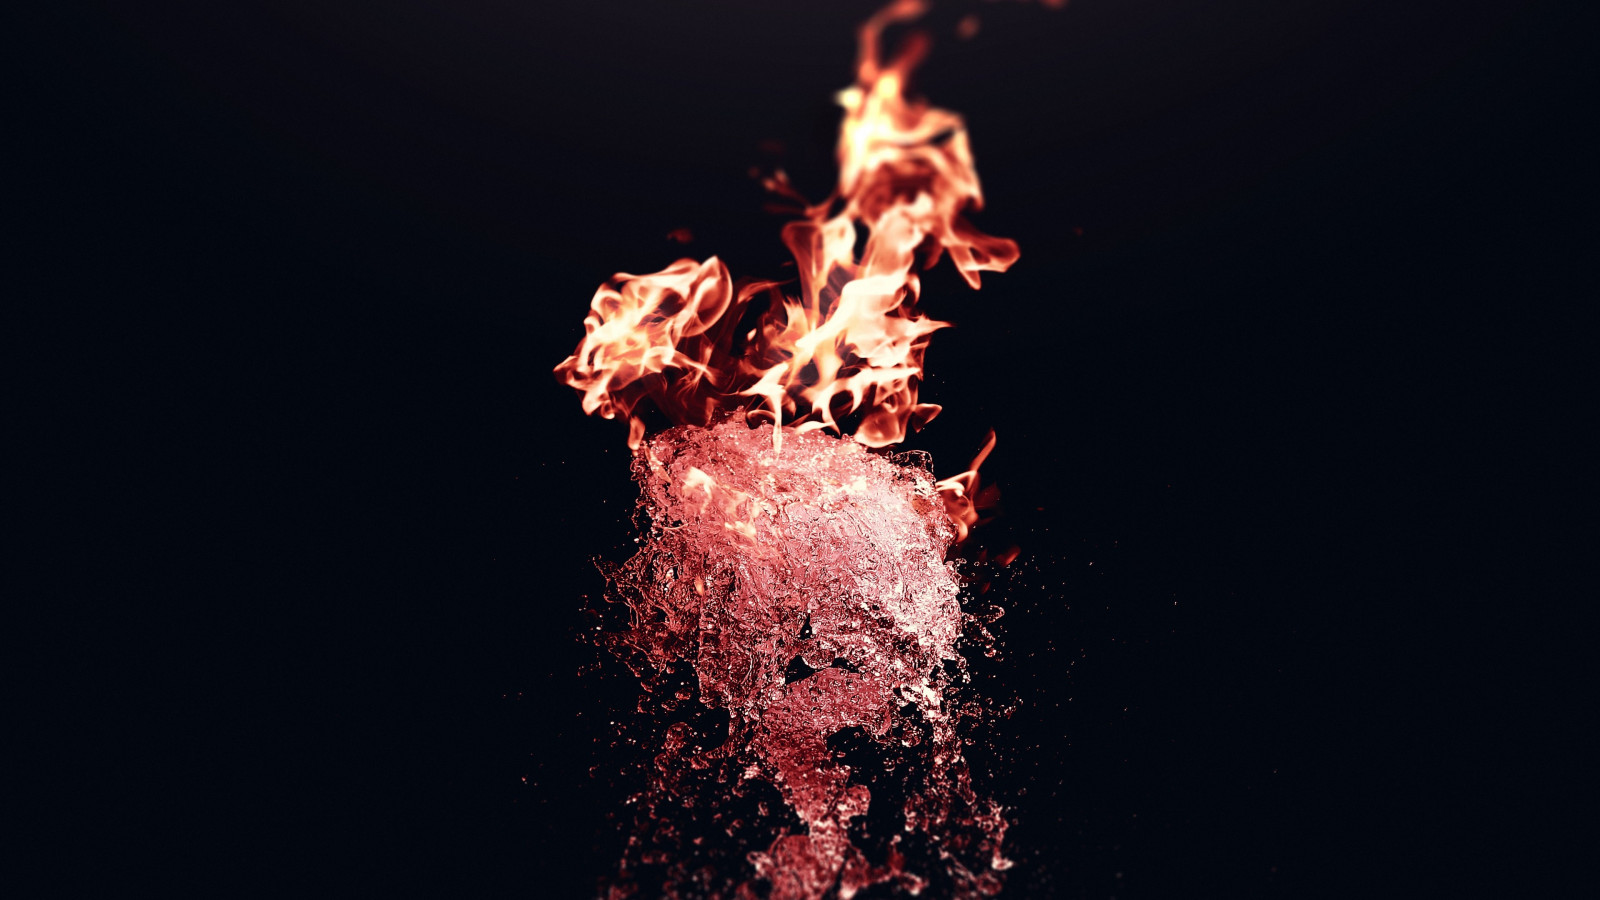 Fire vs Water wallpaper 1600x900